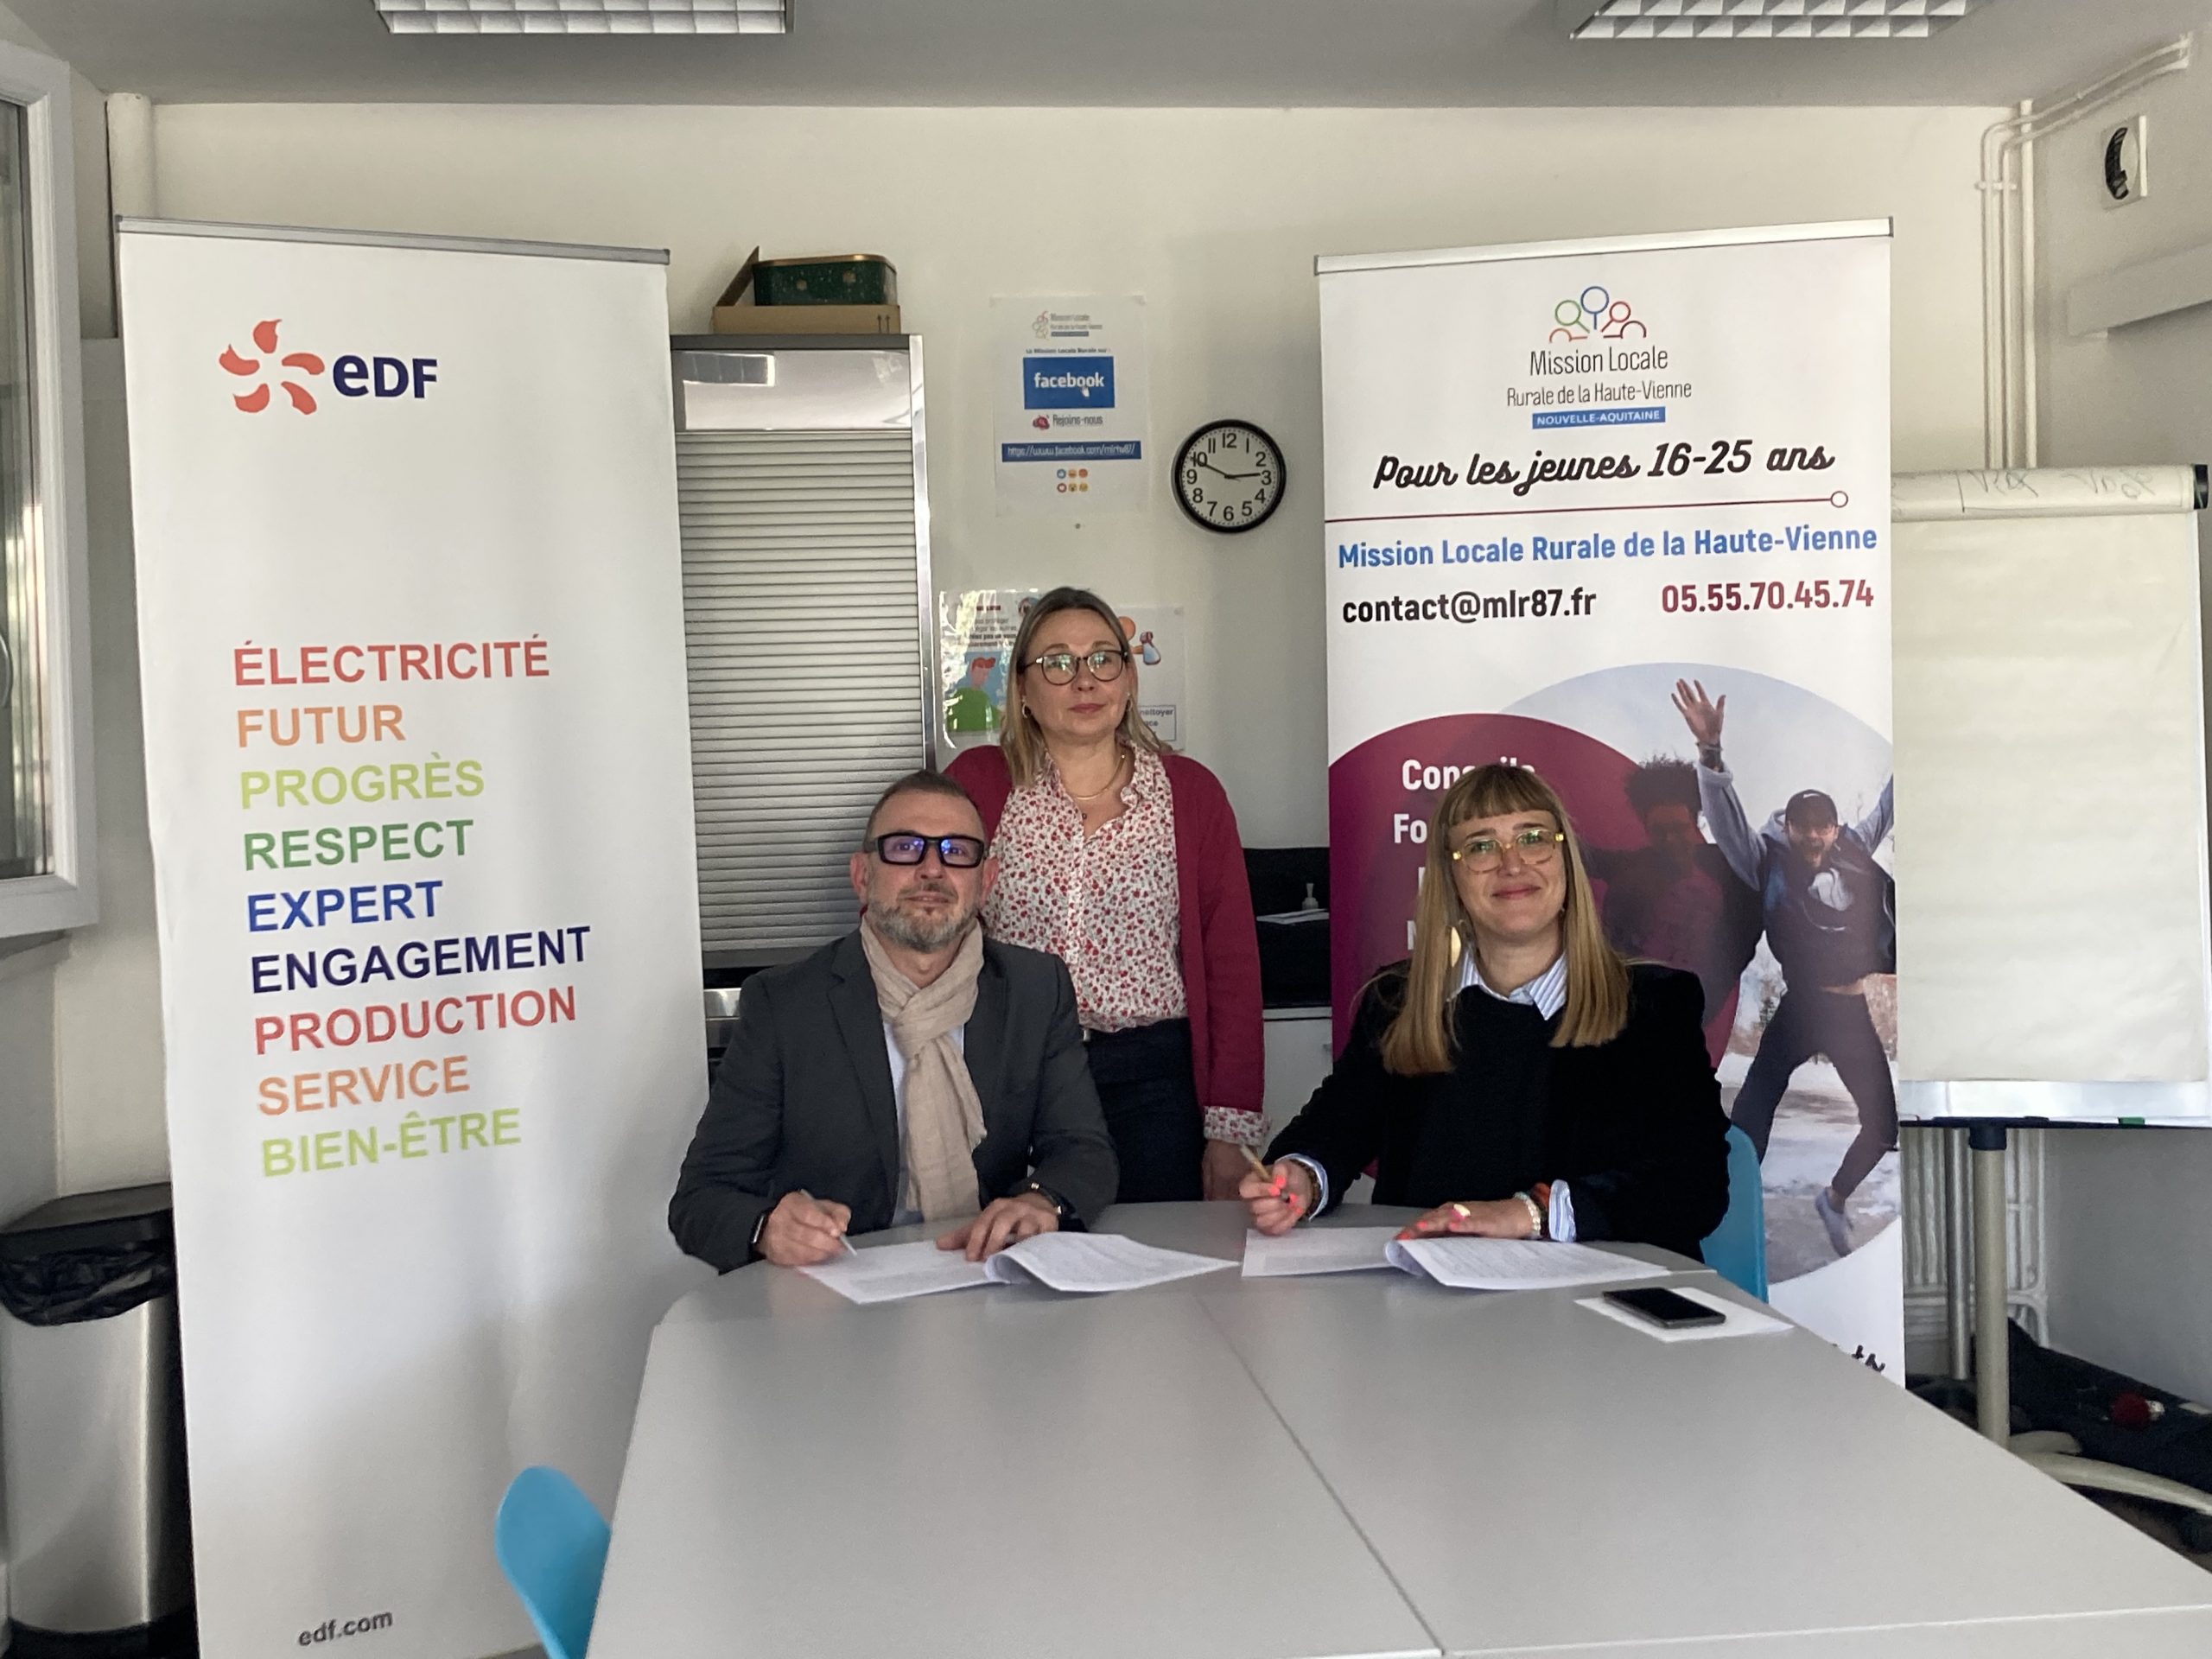 Partenariat entre la mission locale rurale de Haute-Vienne et EDF contre la précarité énergétique